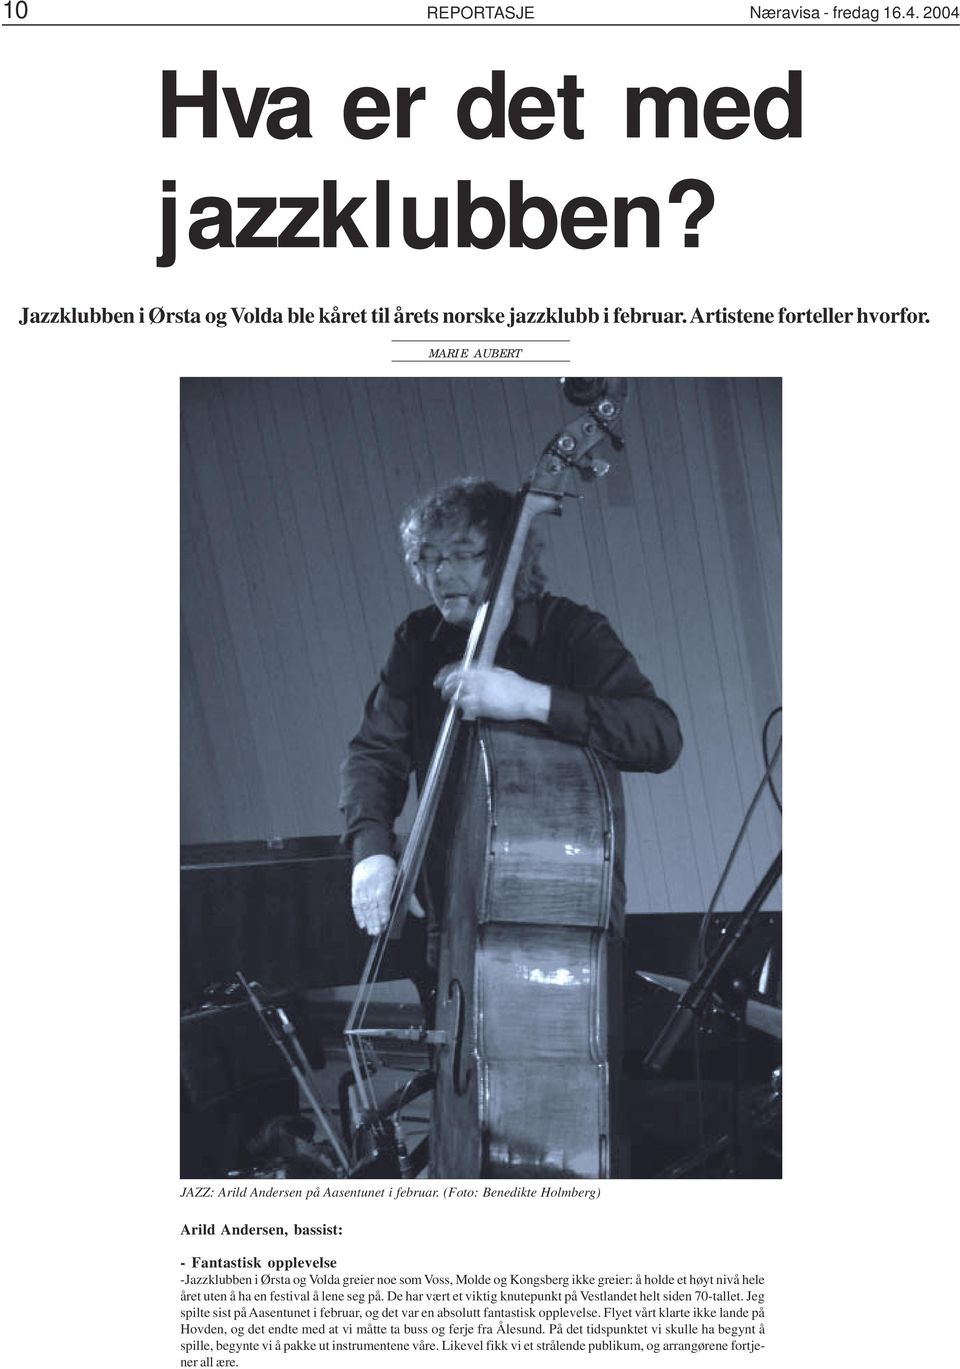 (Foto: Benedikte Holmberg) Arild Andersen, bassist: - Fantastisk opplevelse -Jazzklubben i Ørsta og Volda greier noe som Voss, Molde og Kongsberg ikke greier: å holde et høyt nivå hele året uten å ha